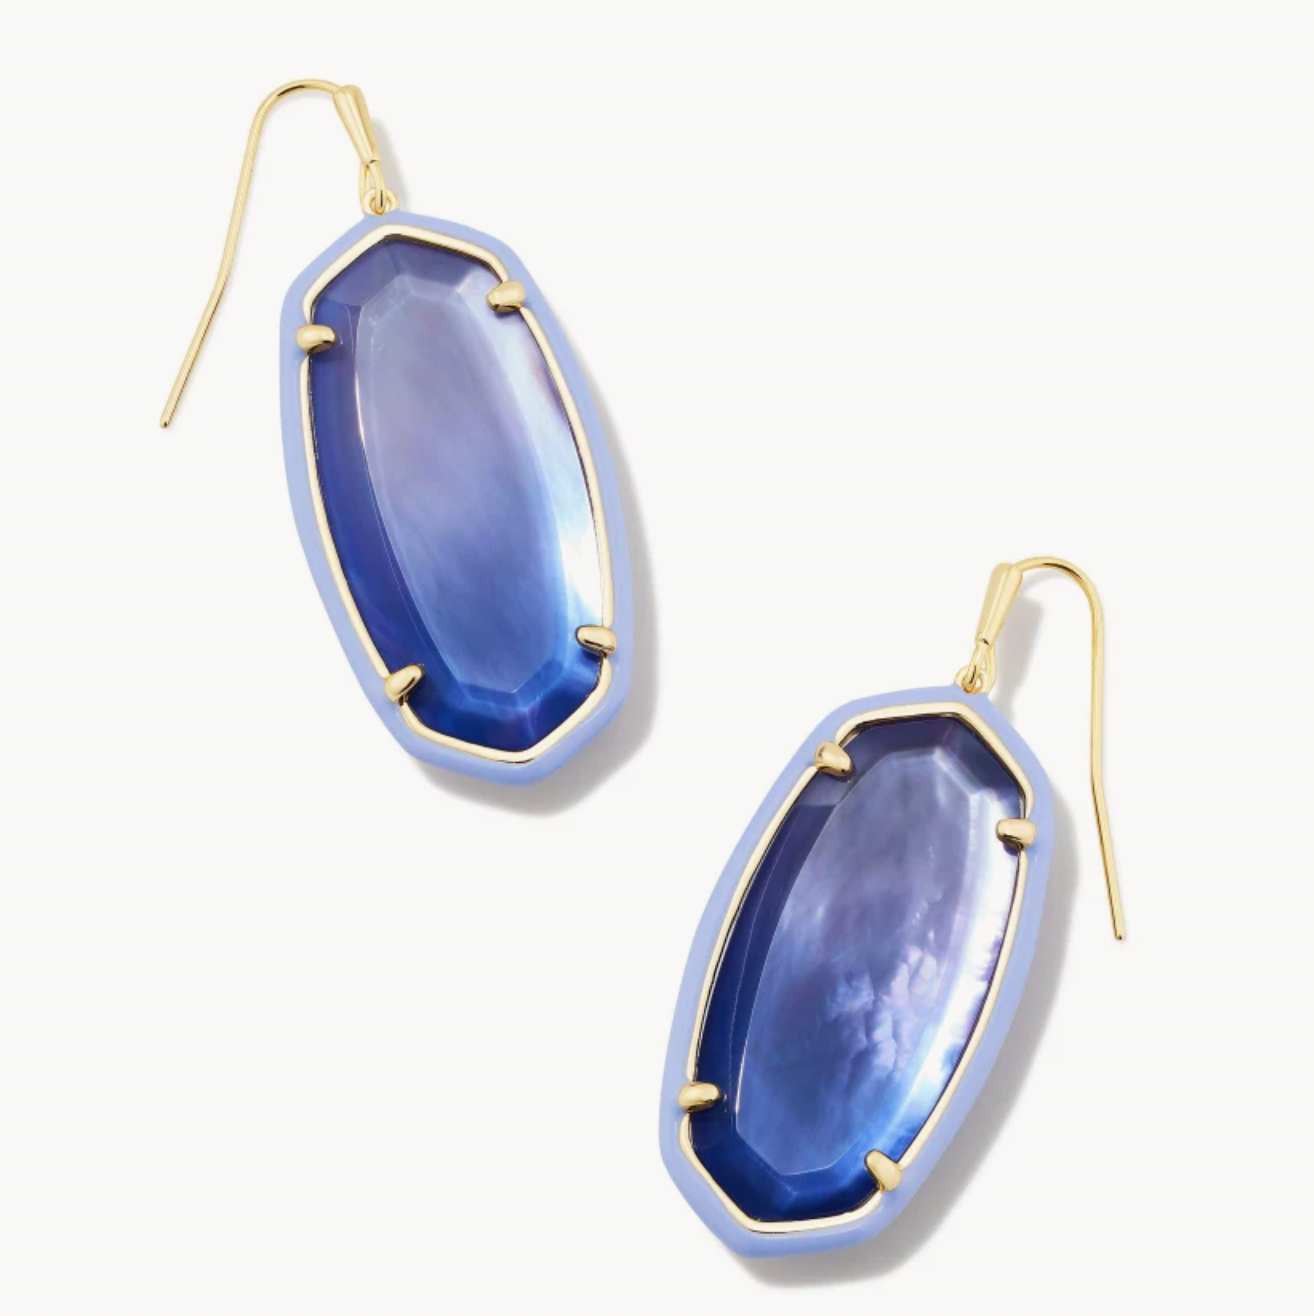 Kendra Scott Elle Gold Drop Earrings in Dark Lavender